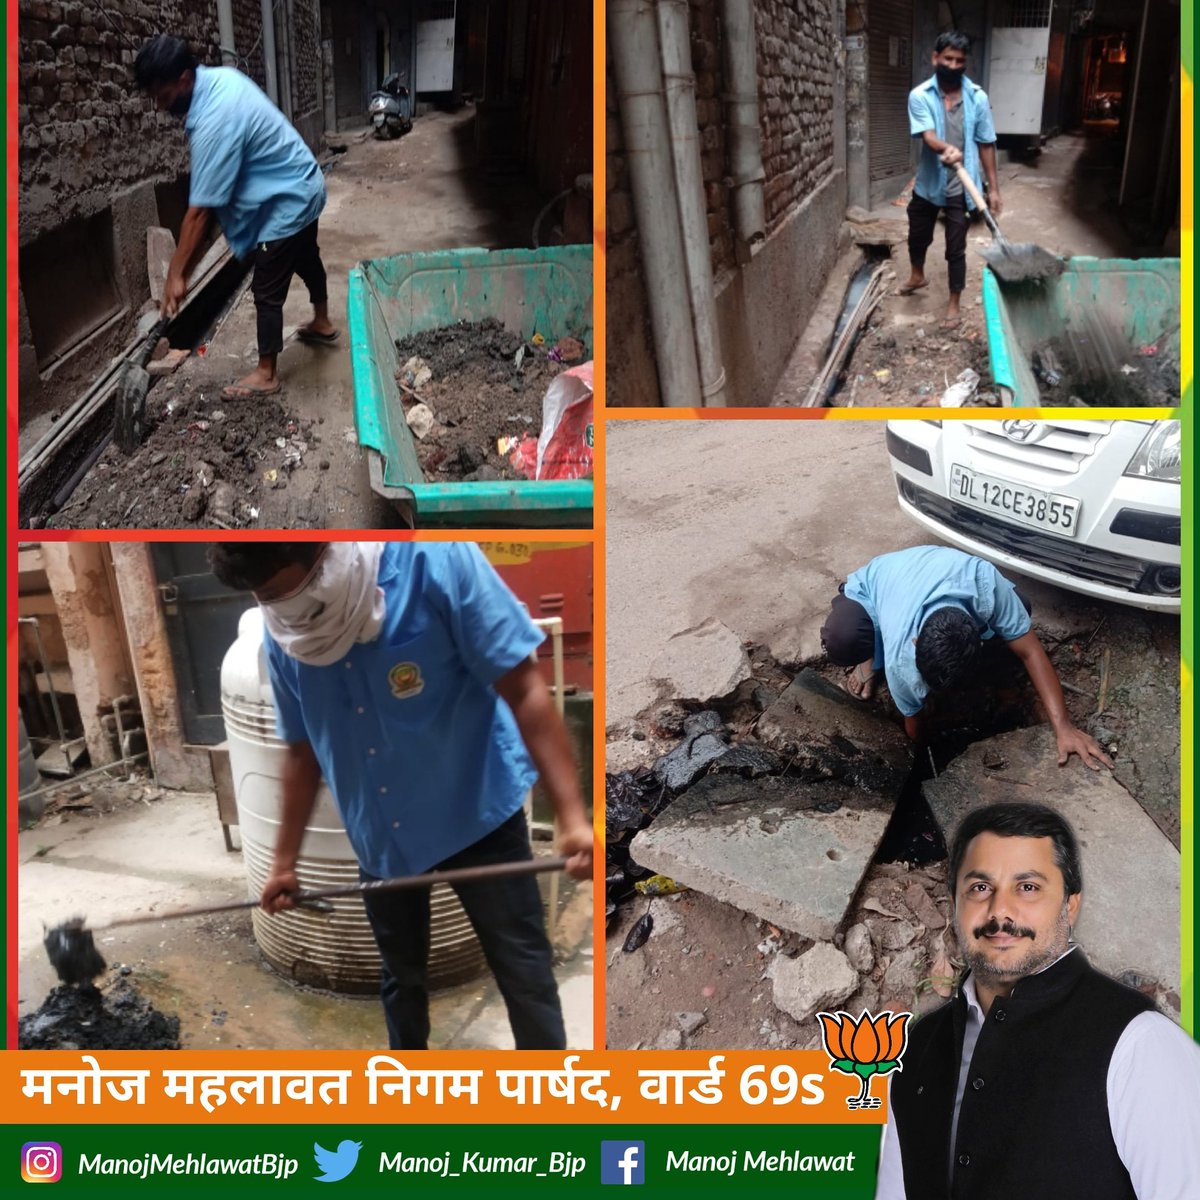 मसूदपुर गांव वसंत कुंज वार्ड 69 एस में सफाई अभियान चलाया गया। 

#SwachhaBharatAbhiyan 
#CleanIndia